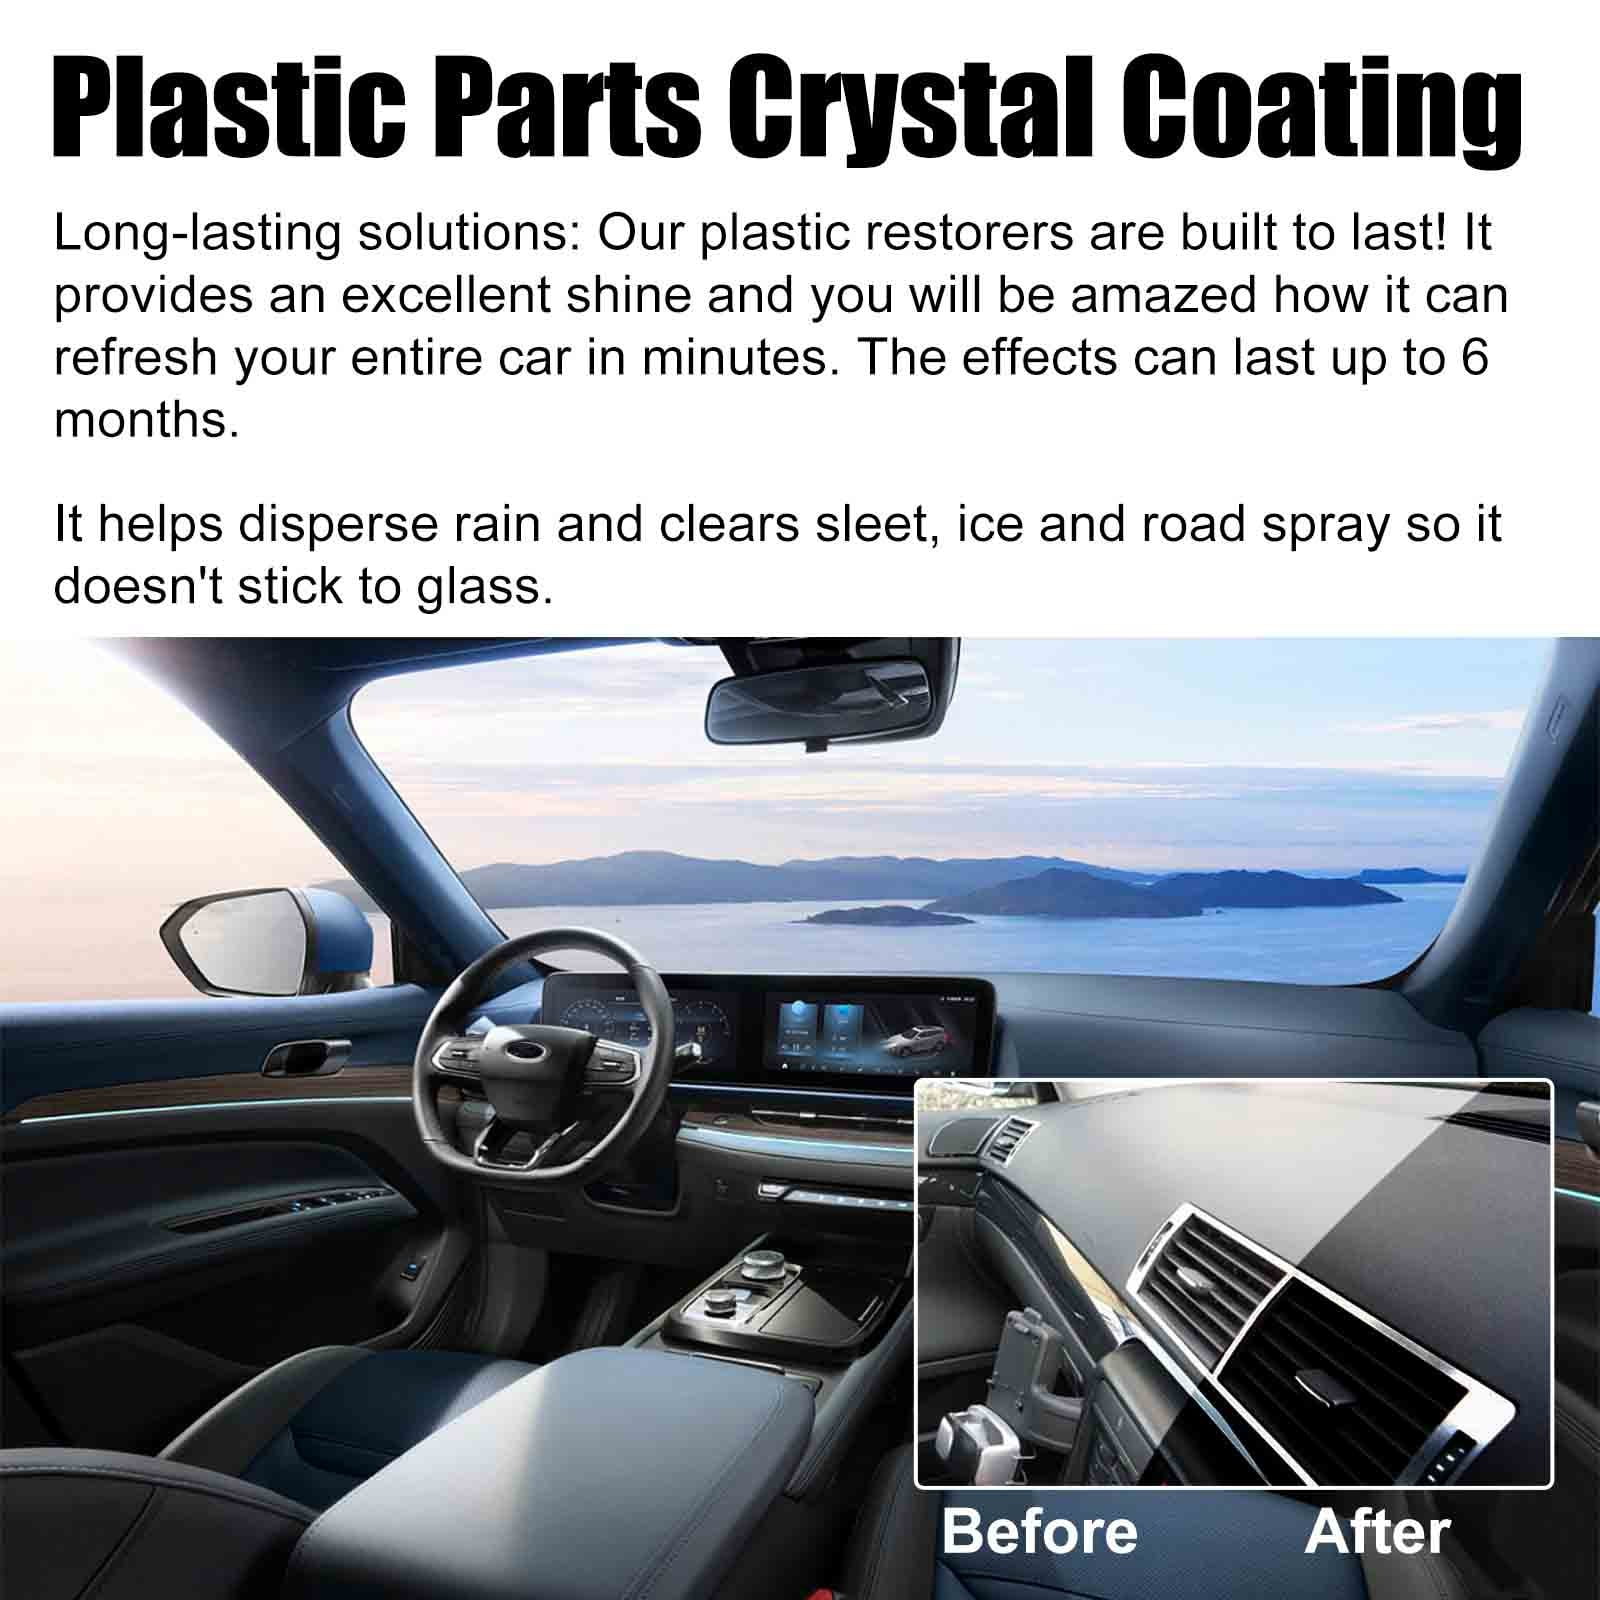 Cristal Coating Para PláStico Del Carro, 2023 New Crystal Coating For Car,  Plastic Parts Crystal Coating, Long Duration Plastic Parts Refurbish Agent